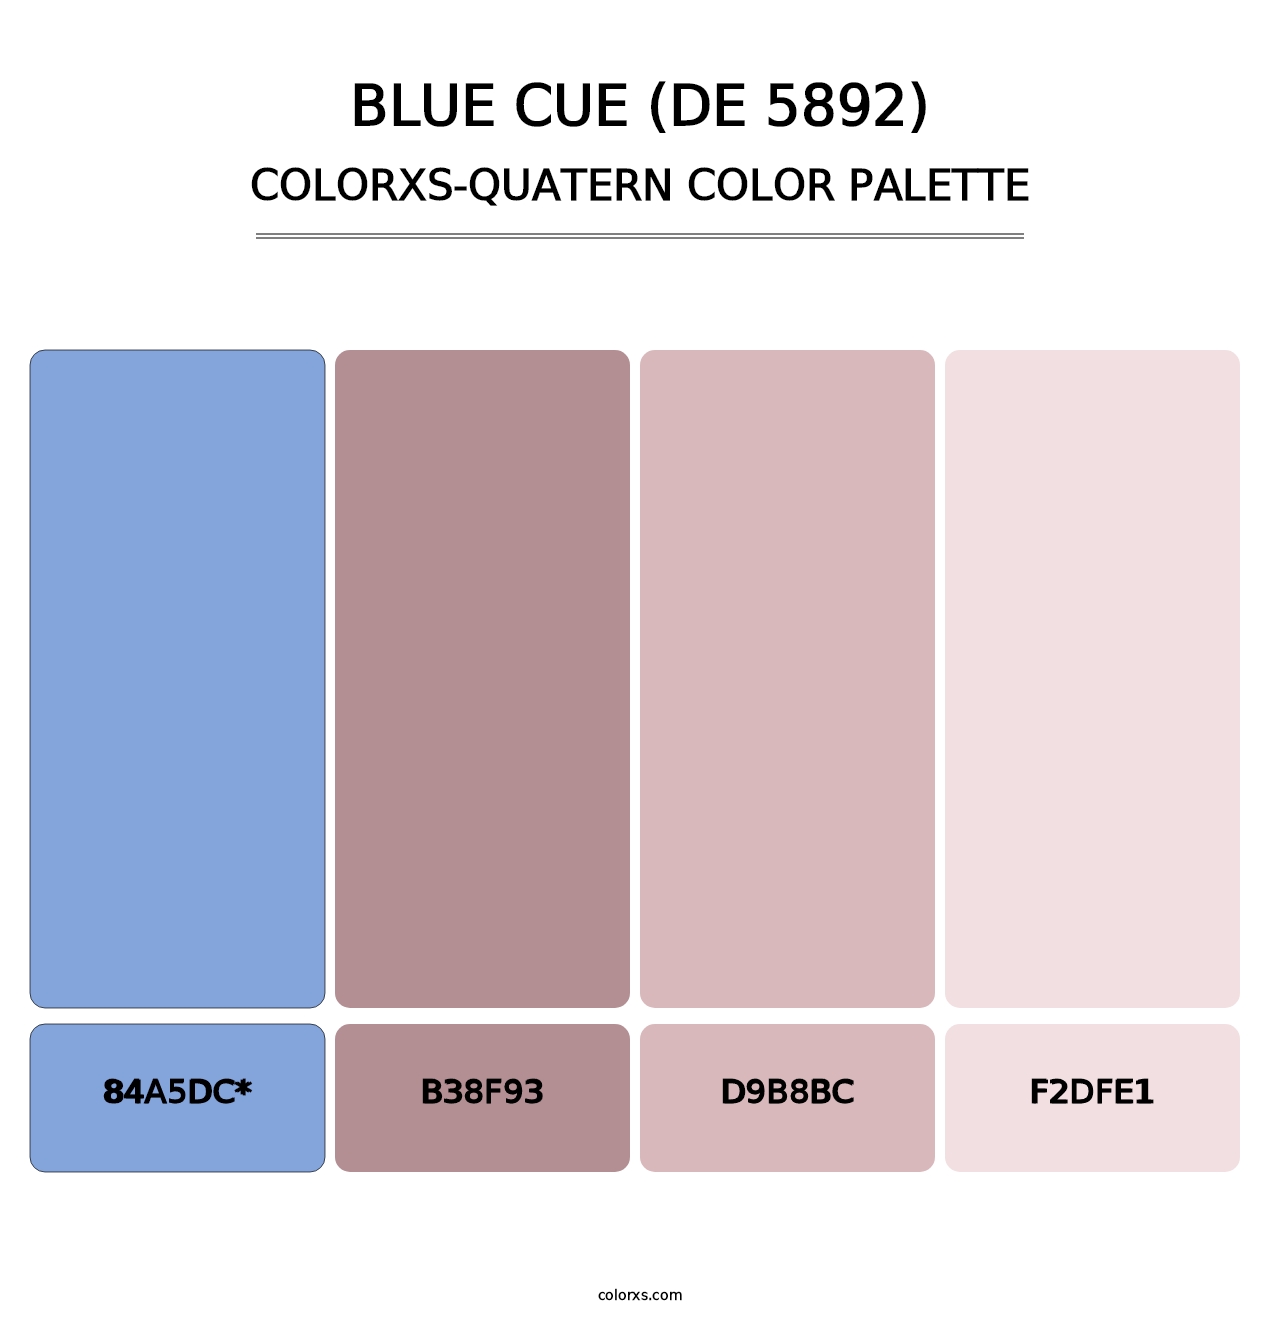 Blue Cue (DE 5892) - Colorxs Quatern Palette